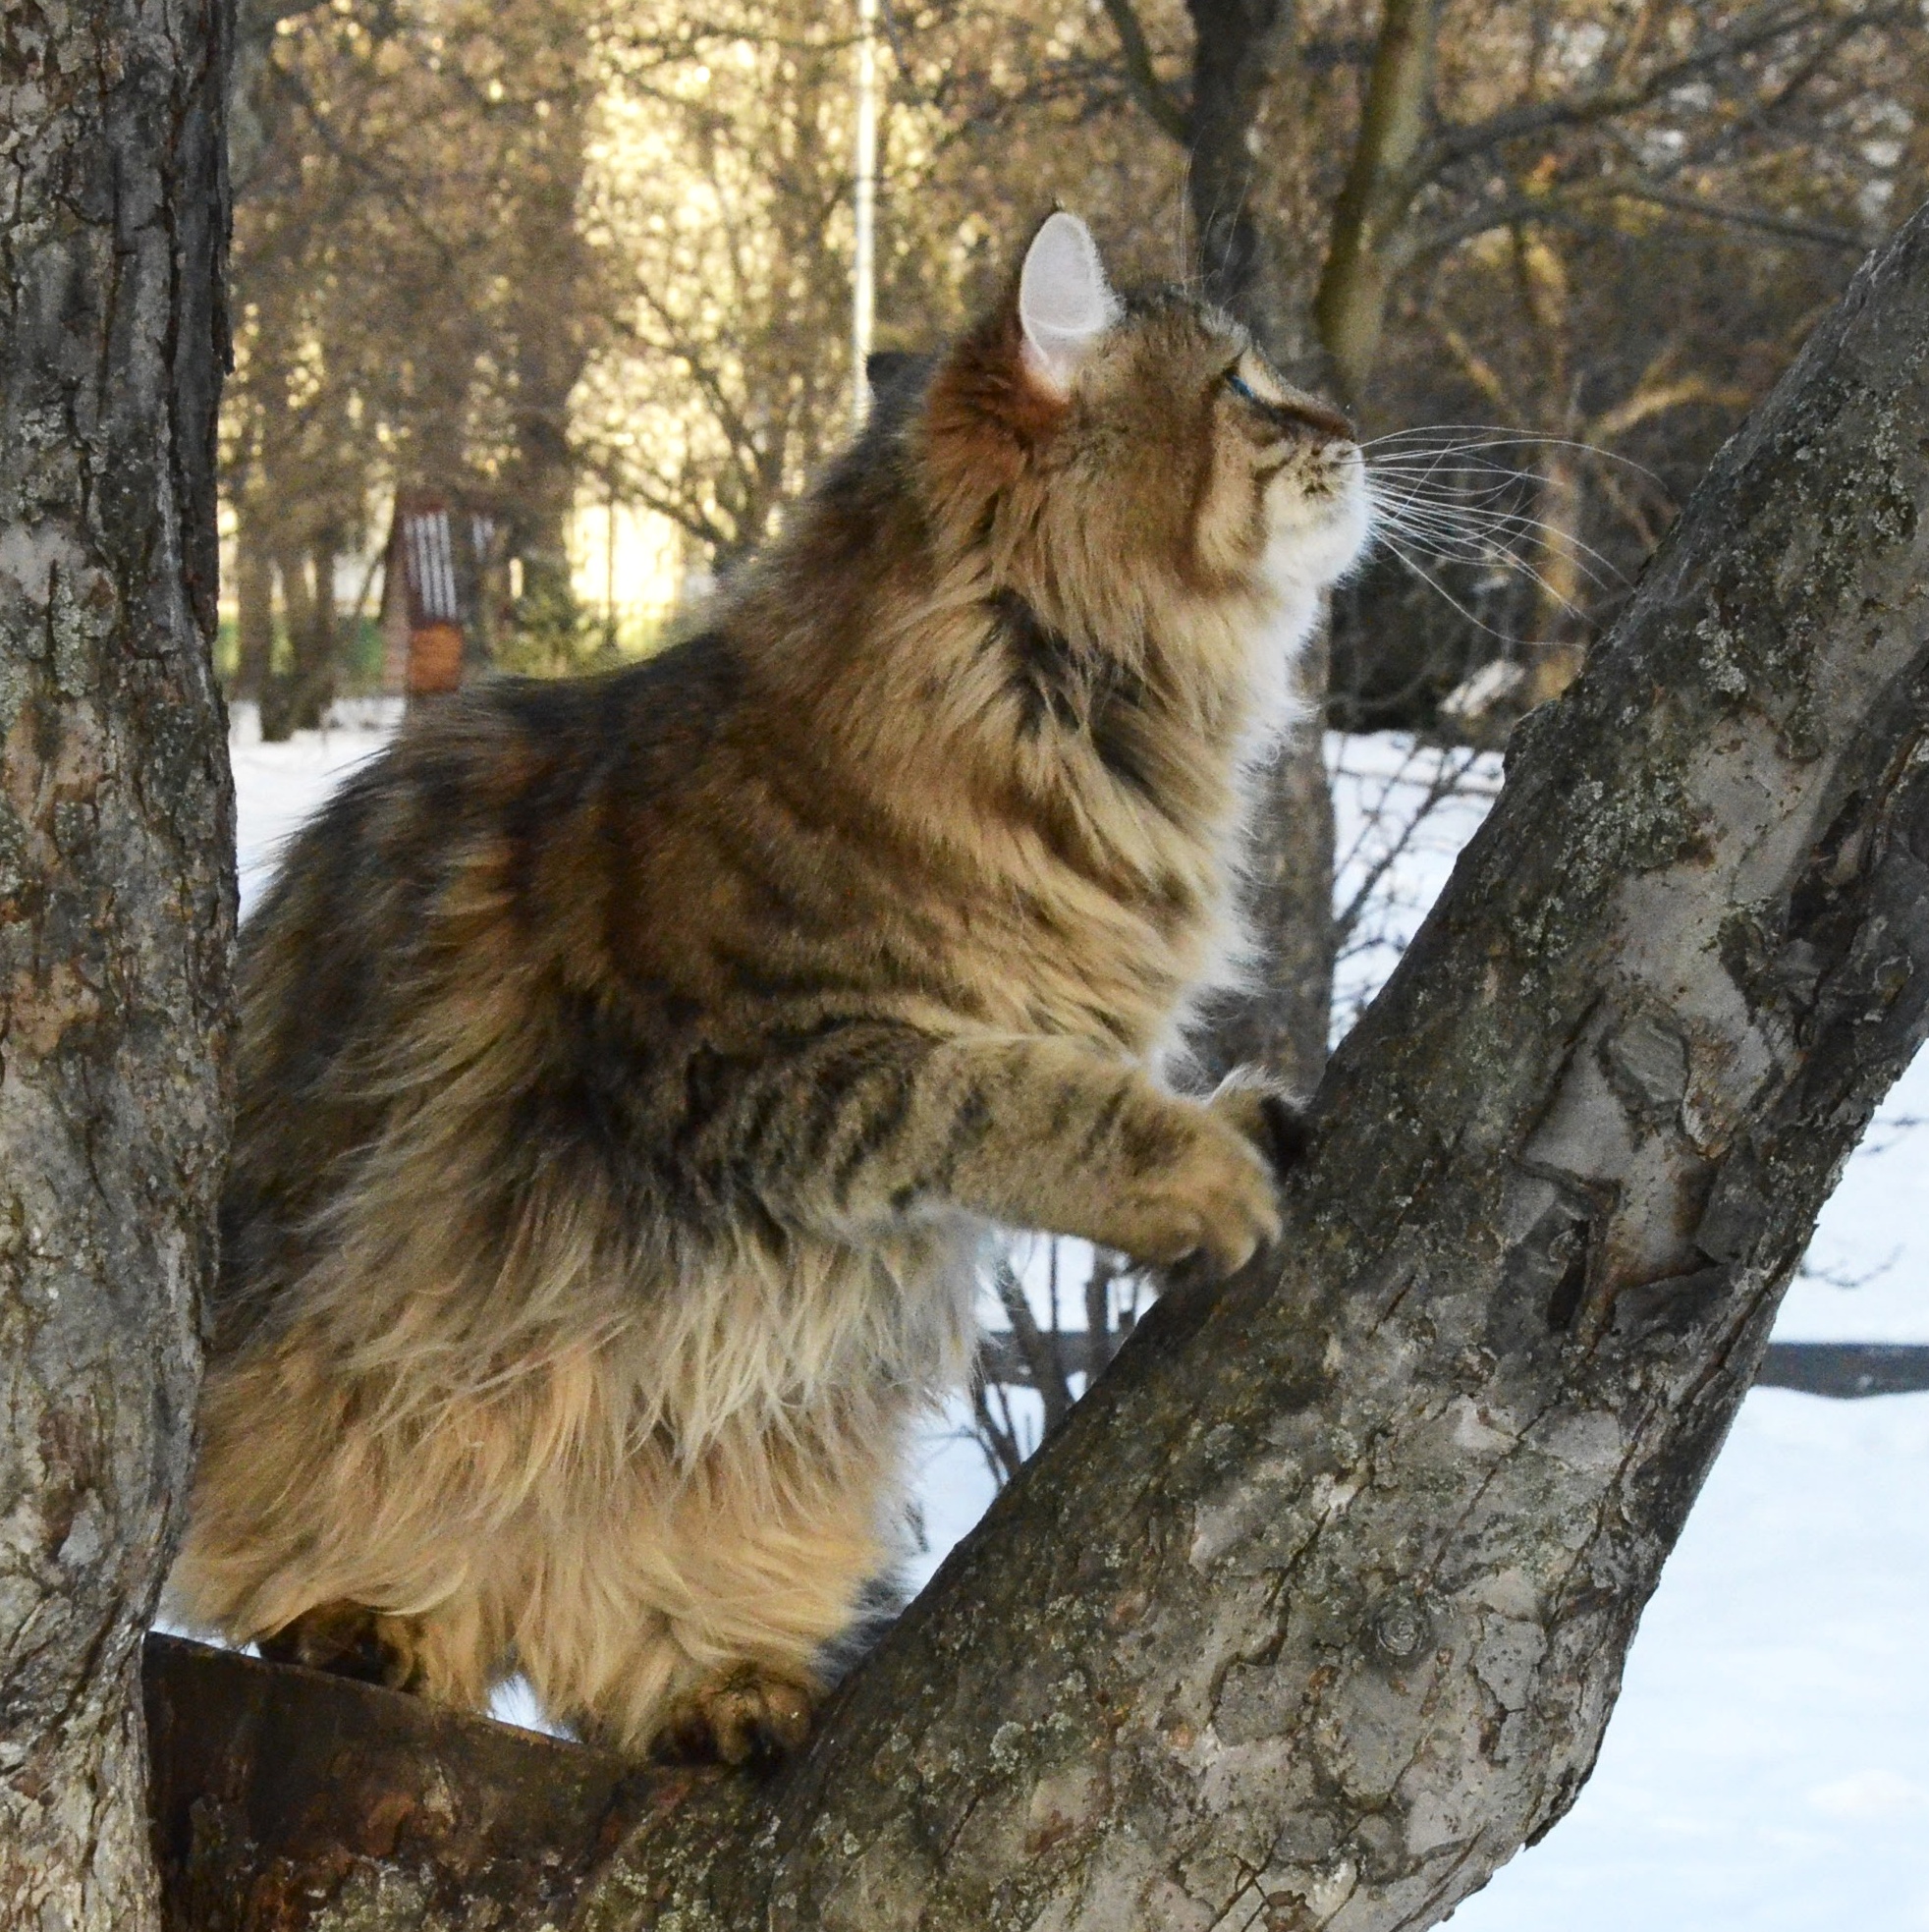 Siberian cat